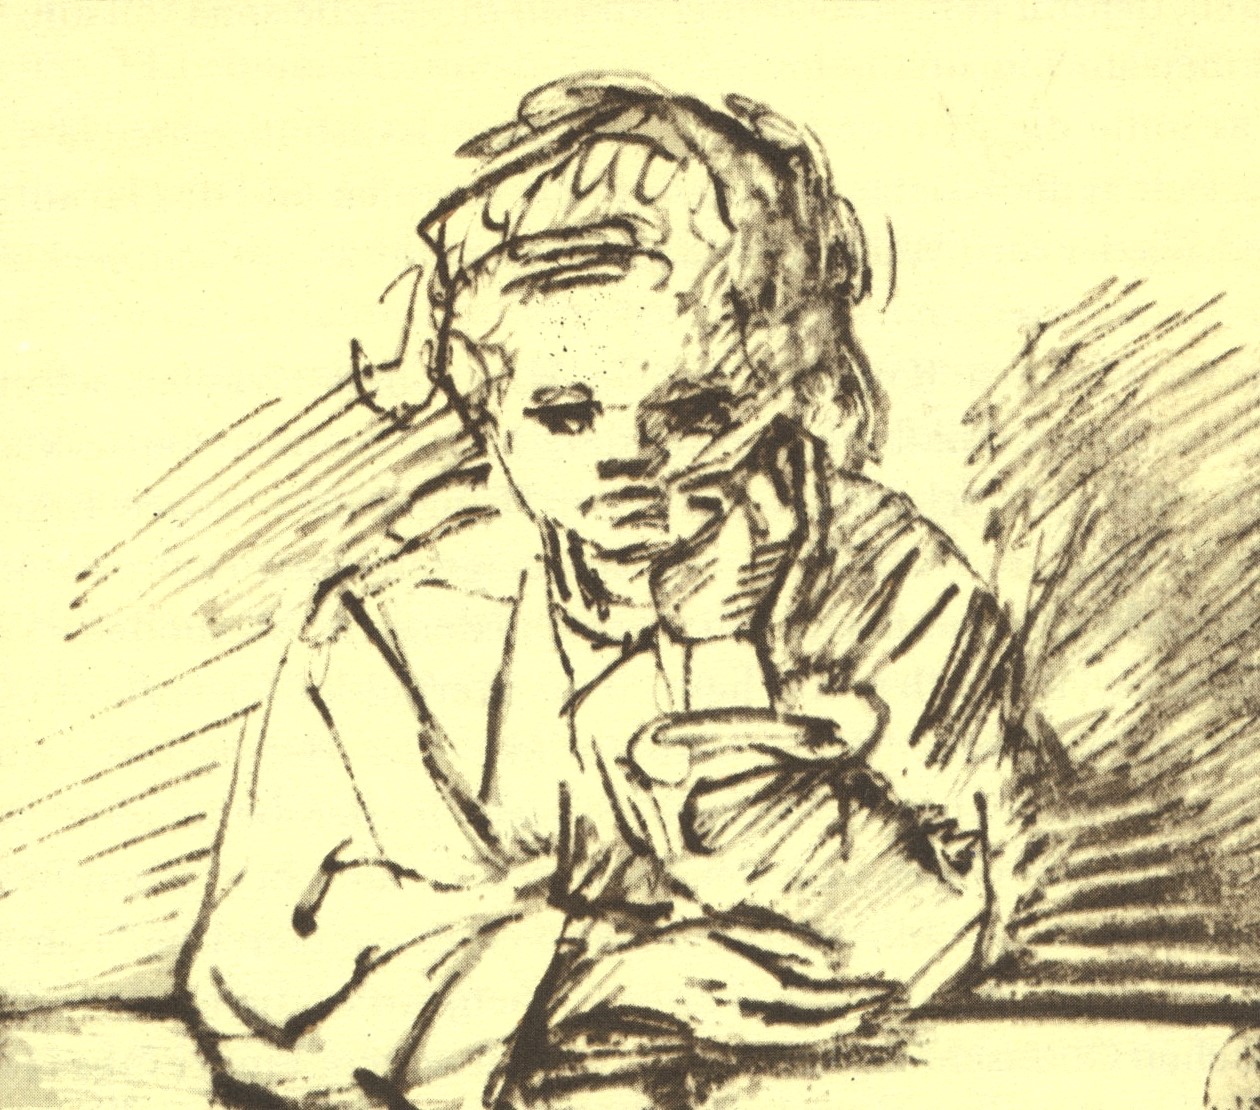 Рембранд Харменс ван Рейн. "Молодая девушка, глядящая в окно". Государственные художественные собрания Дрездена.